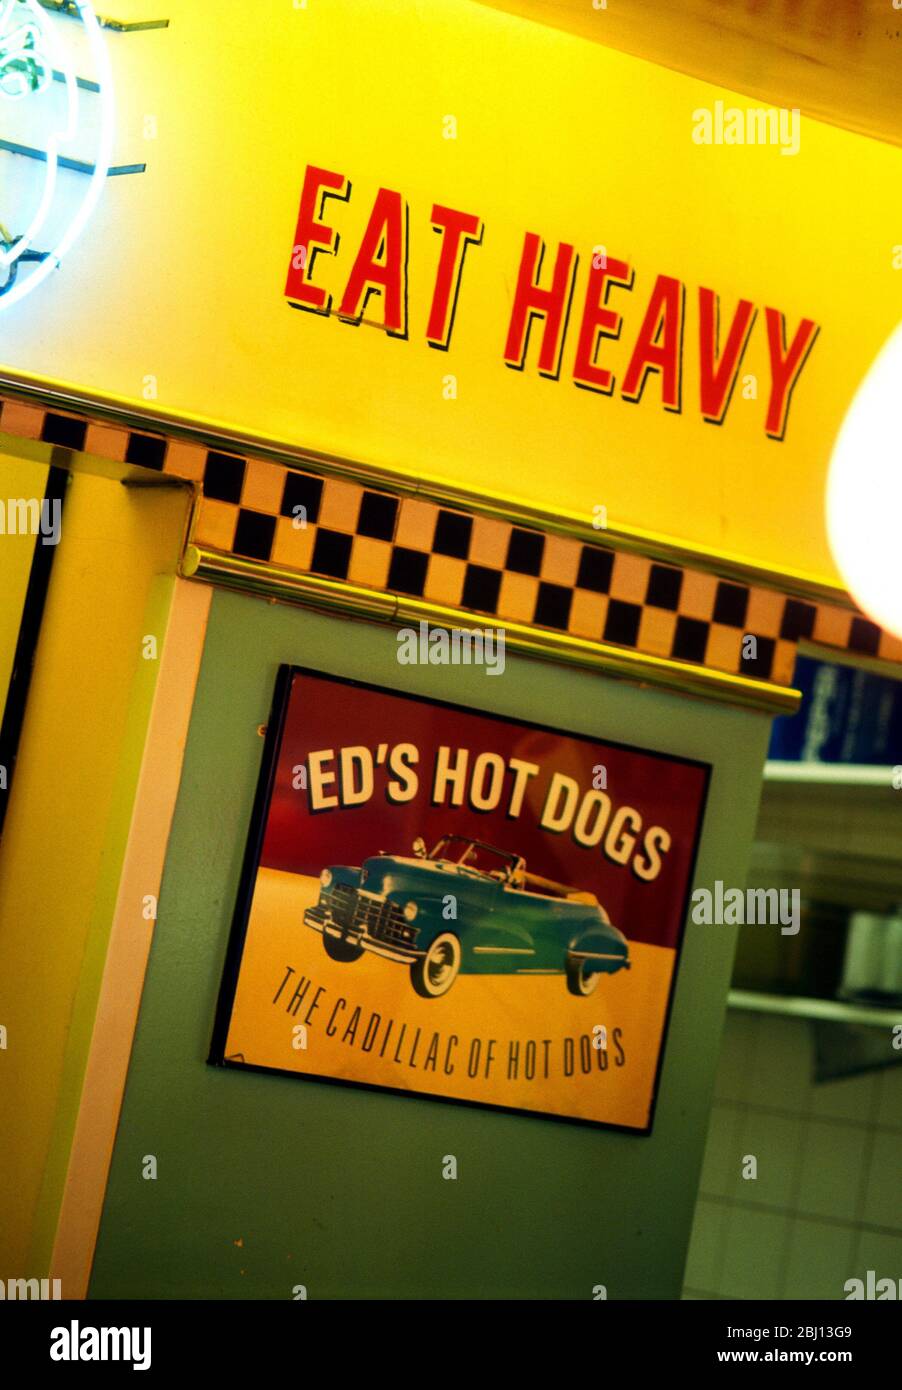 Mangiare pesante - ed's hot dogs - la Cadillac di hot dogs - Foto Stock